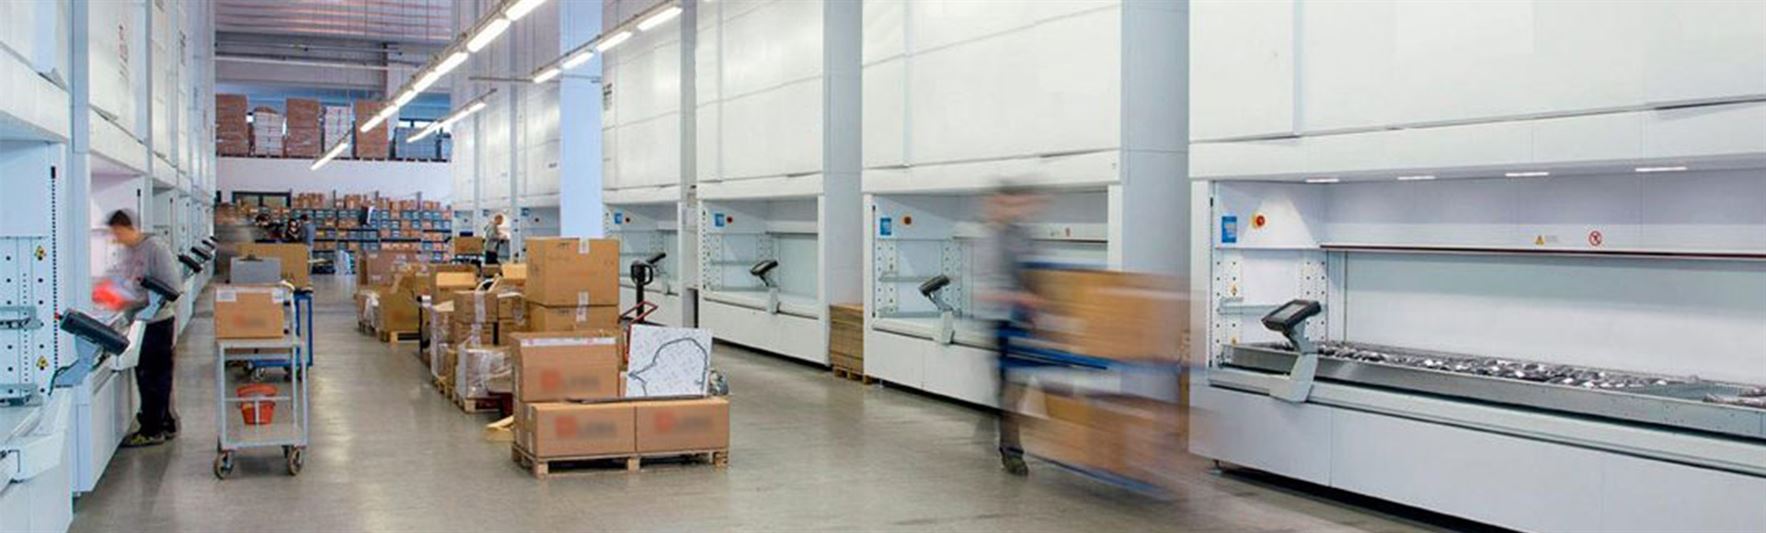 Ottimizzare i processi logistici di prelievo da magazzini automatici verticali